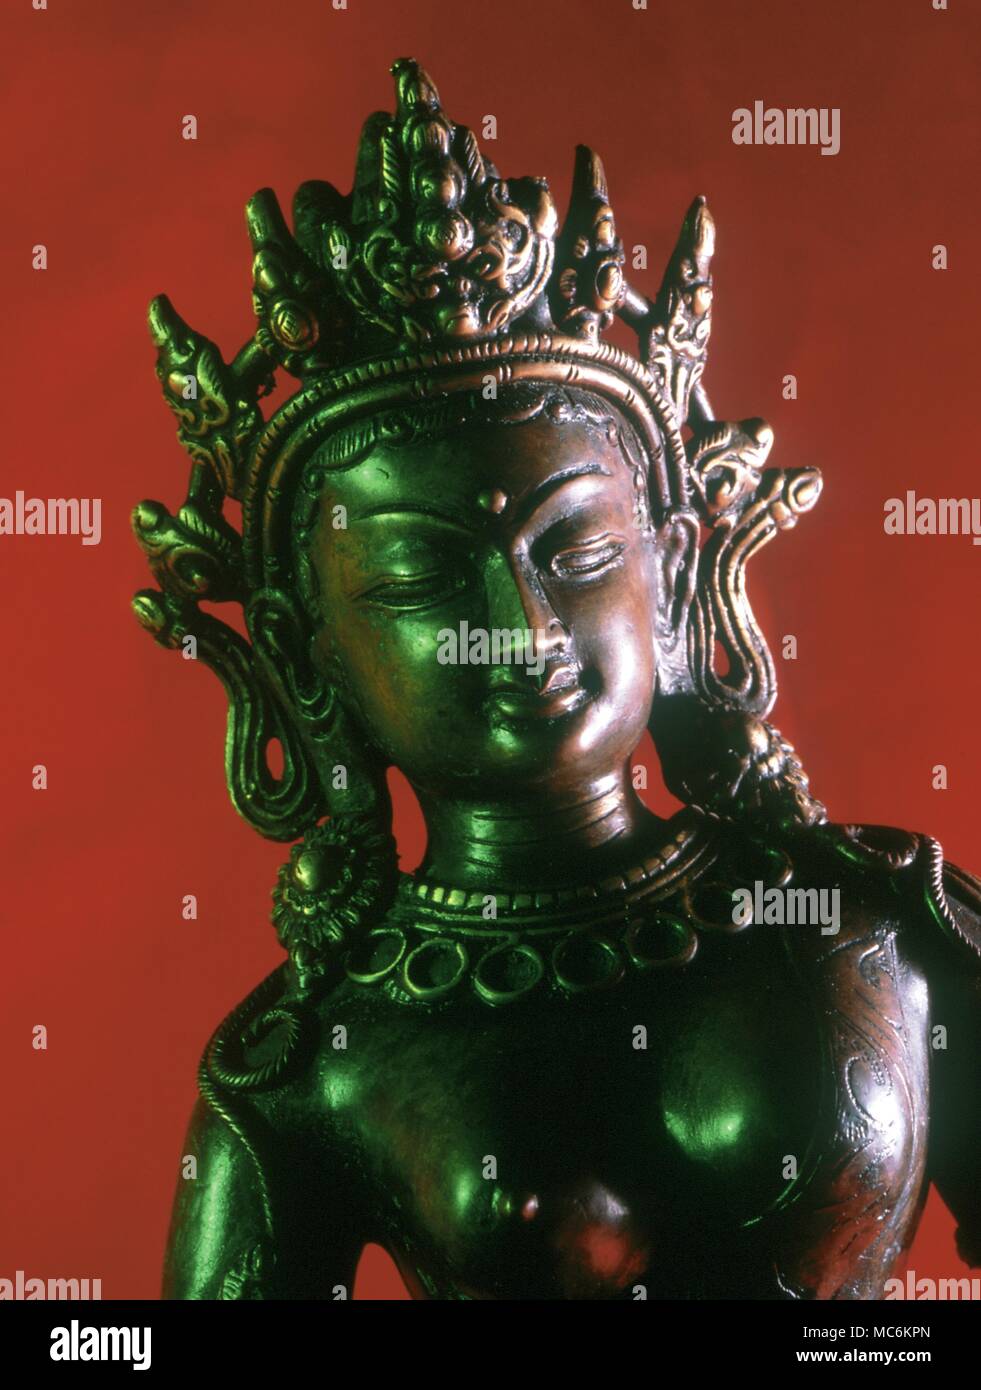 La mythologie Hindoue. Statue en bronze de la déesse hindoue 'Mère'', Saravati. Elle est une ancienne déesse, vraisemblablement un,Védique et son nom l'indique a l'origine elle était une déesse de l'eau. ' Banque D'Images